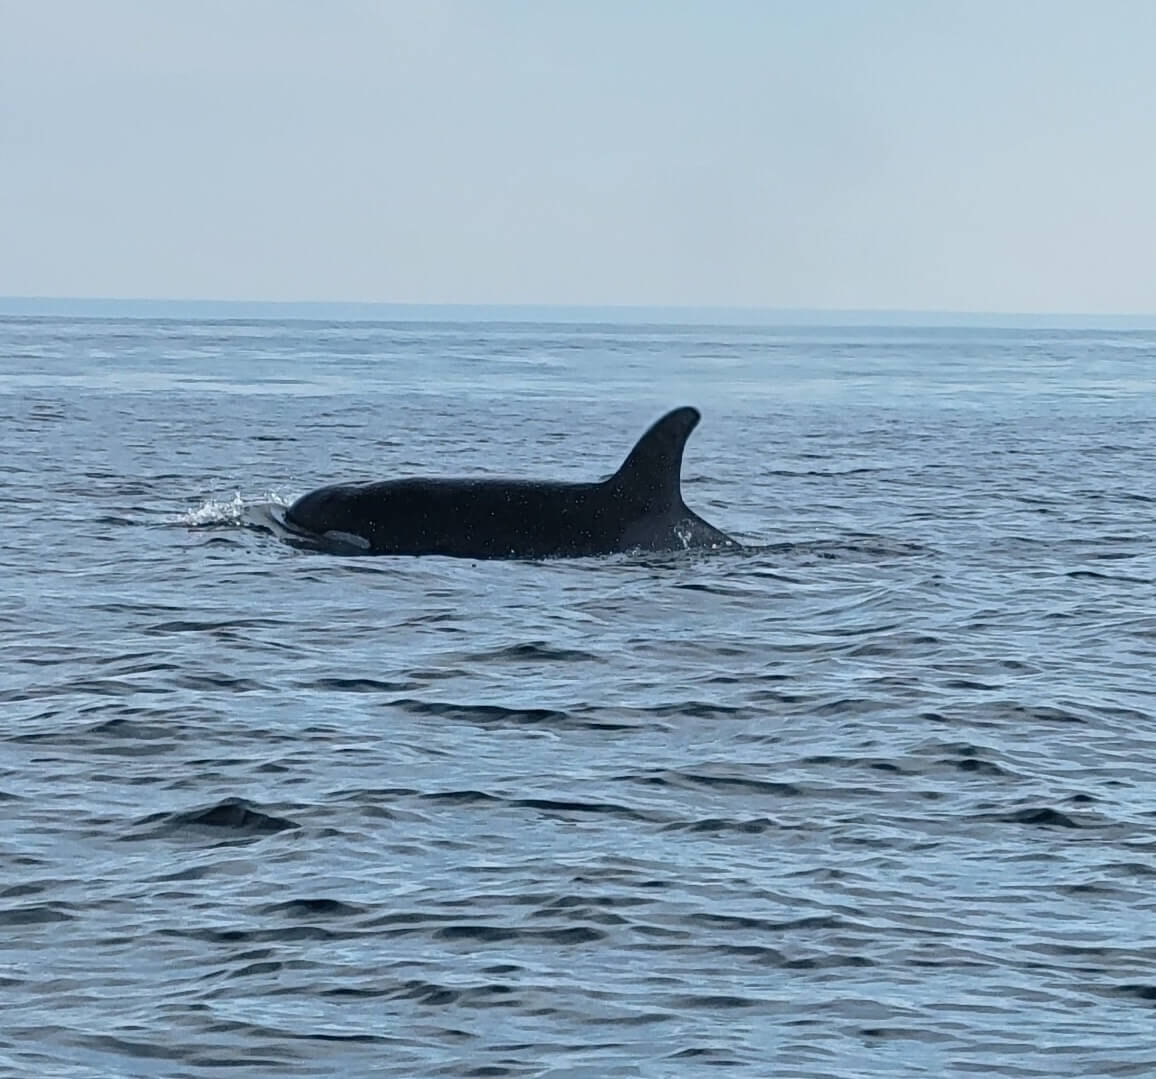 Head and dorsal fin of an orca.